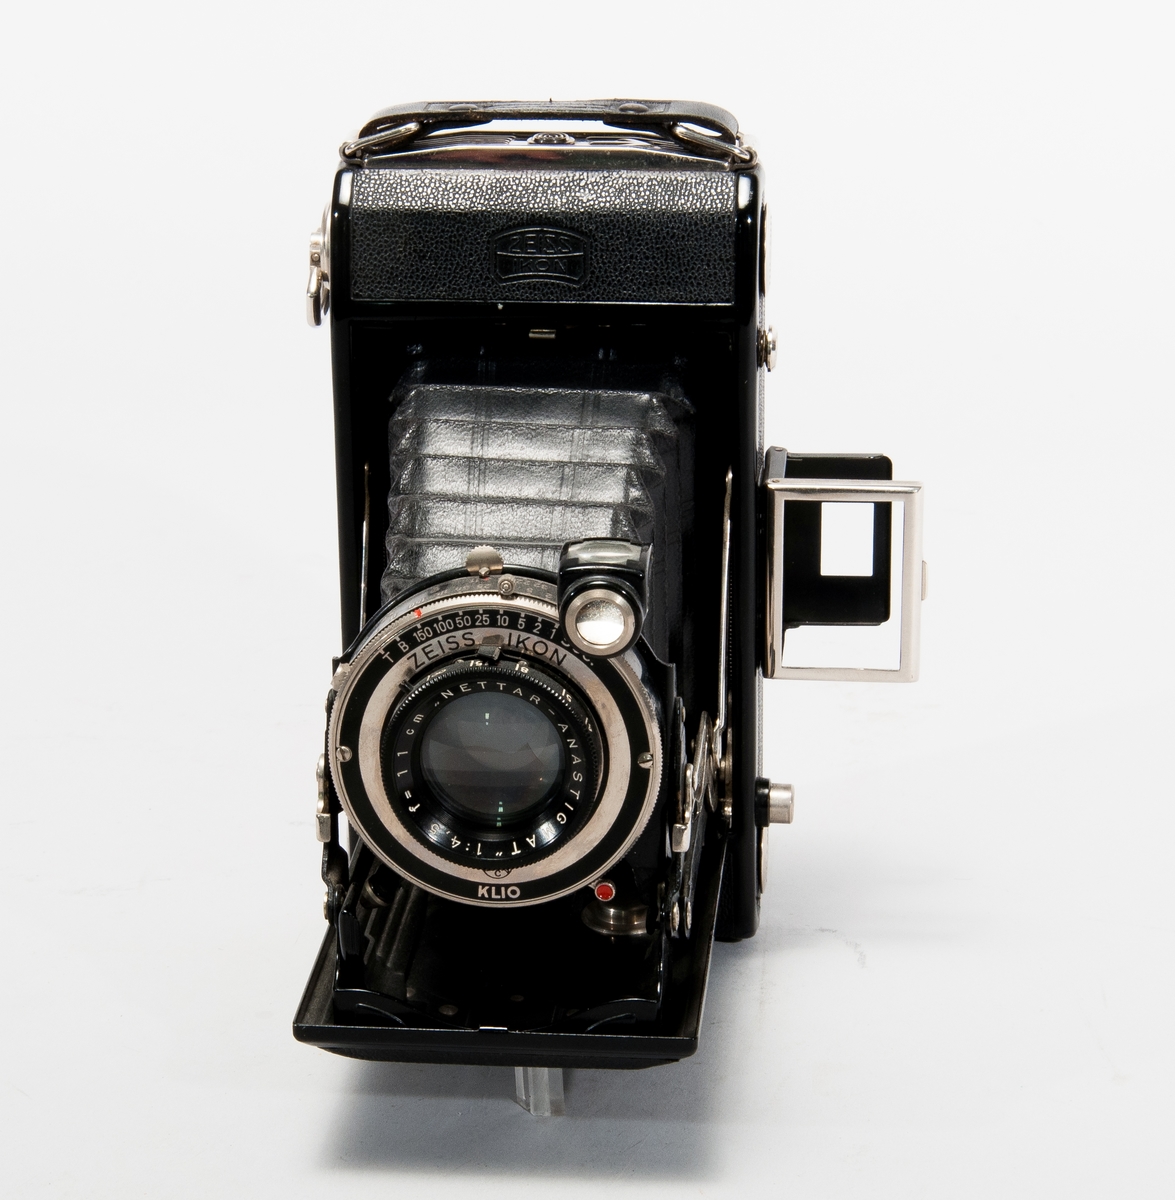 Kamera Zeiss Icon 505/2 med väska och axelrem av läder. 
Objektiv: Nettar-Anastigmat 1:4,5 f = 11 cm, slutare Klio.
Märkt på baksidan: Nettar 515/2.